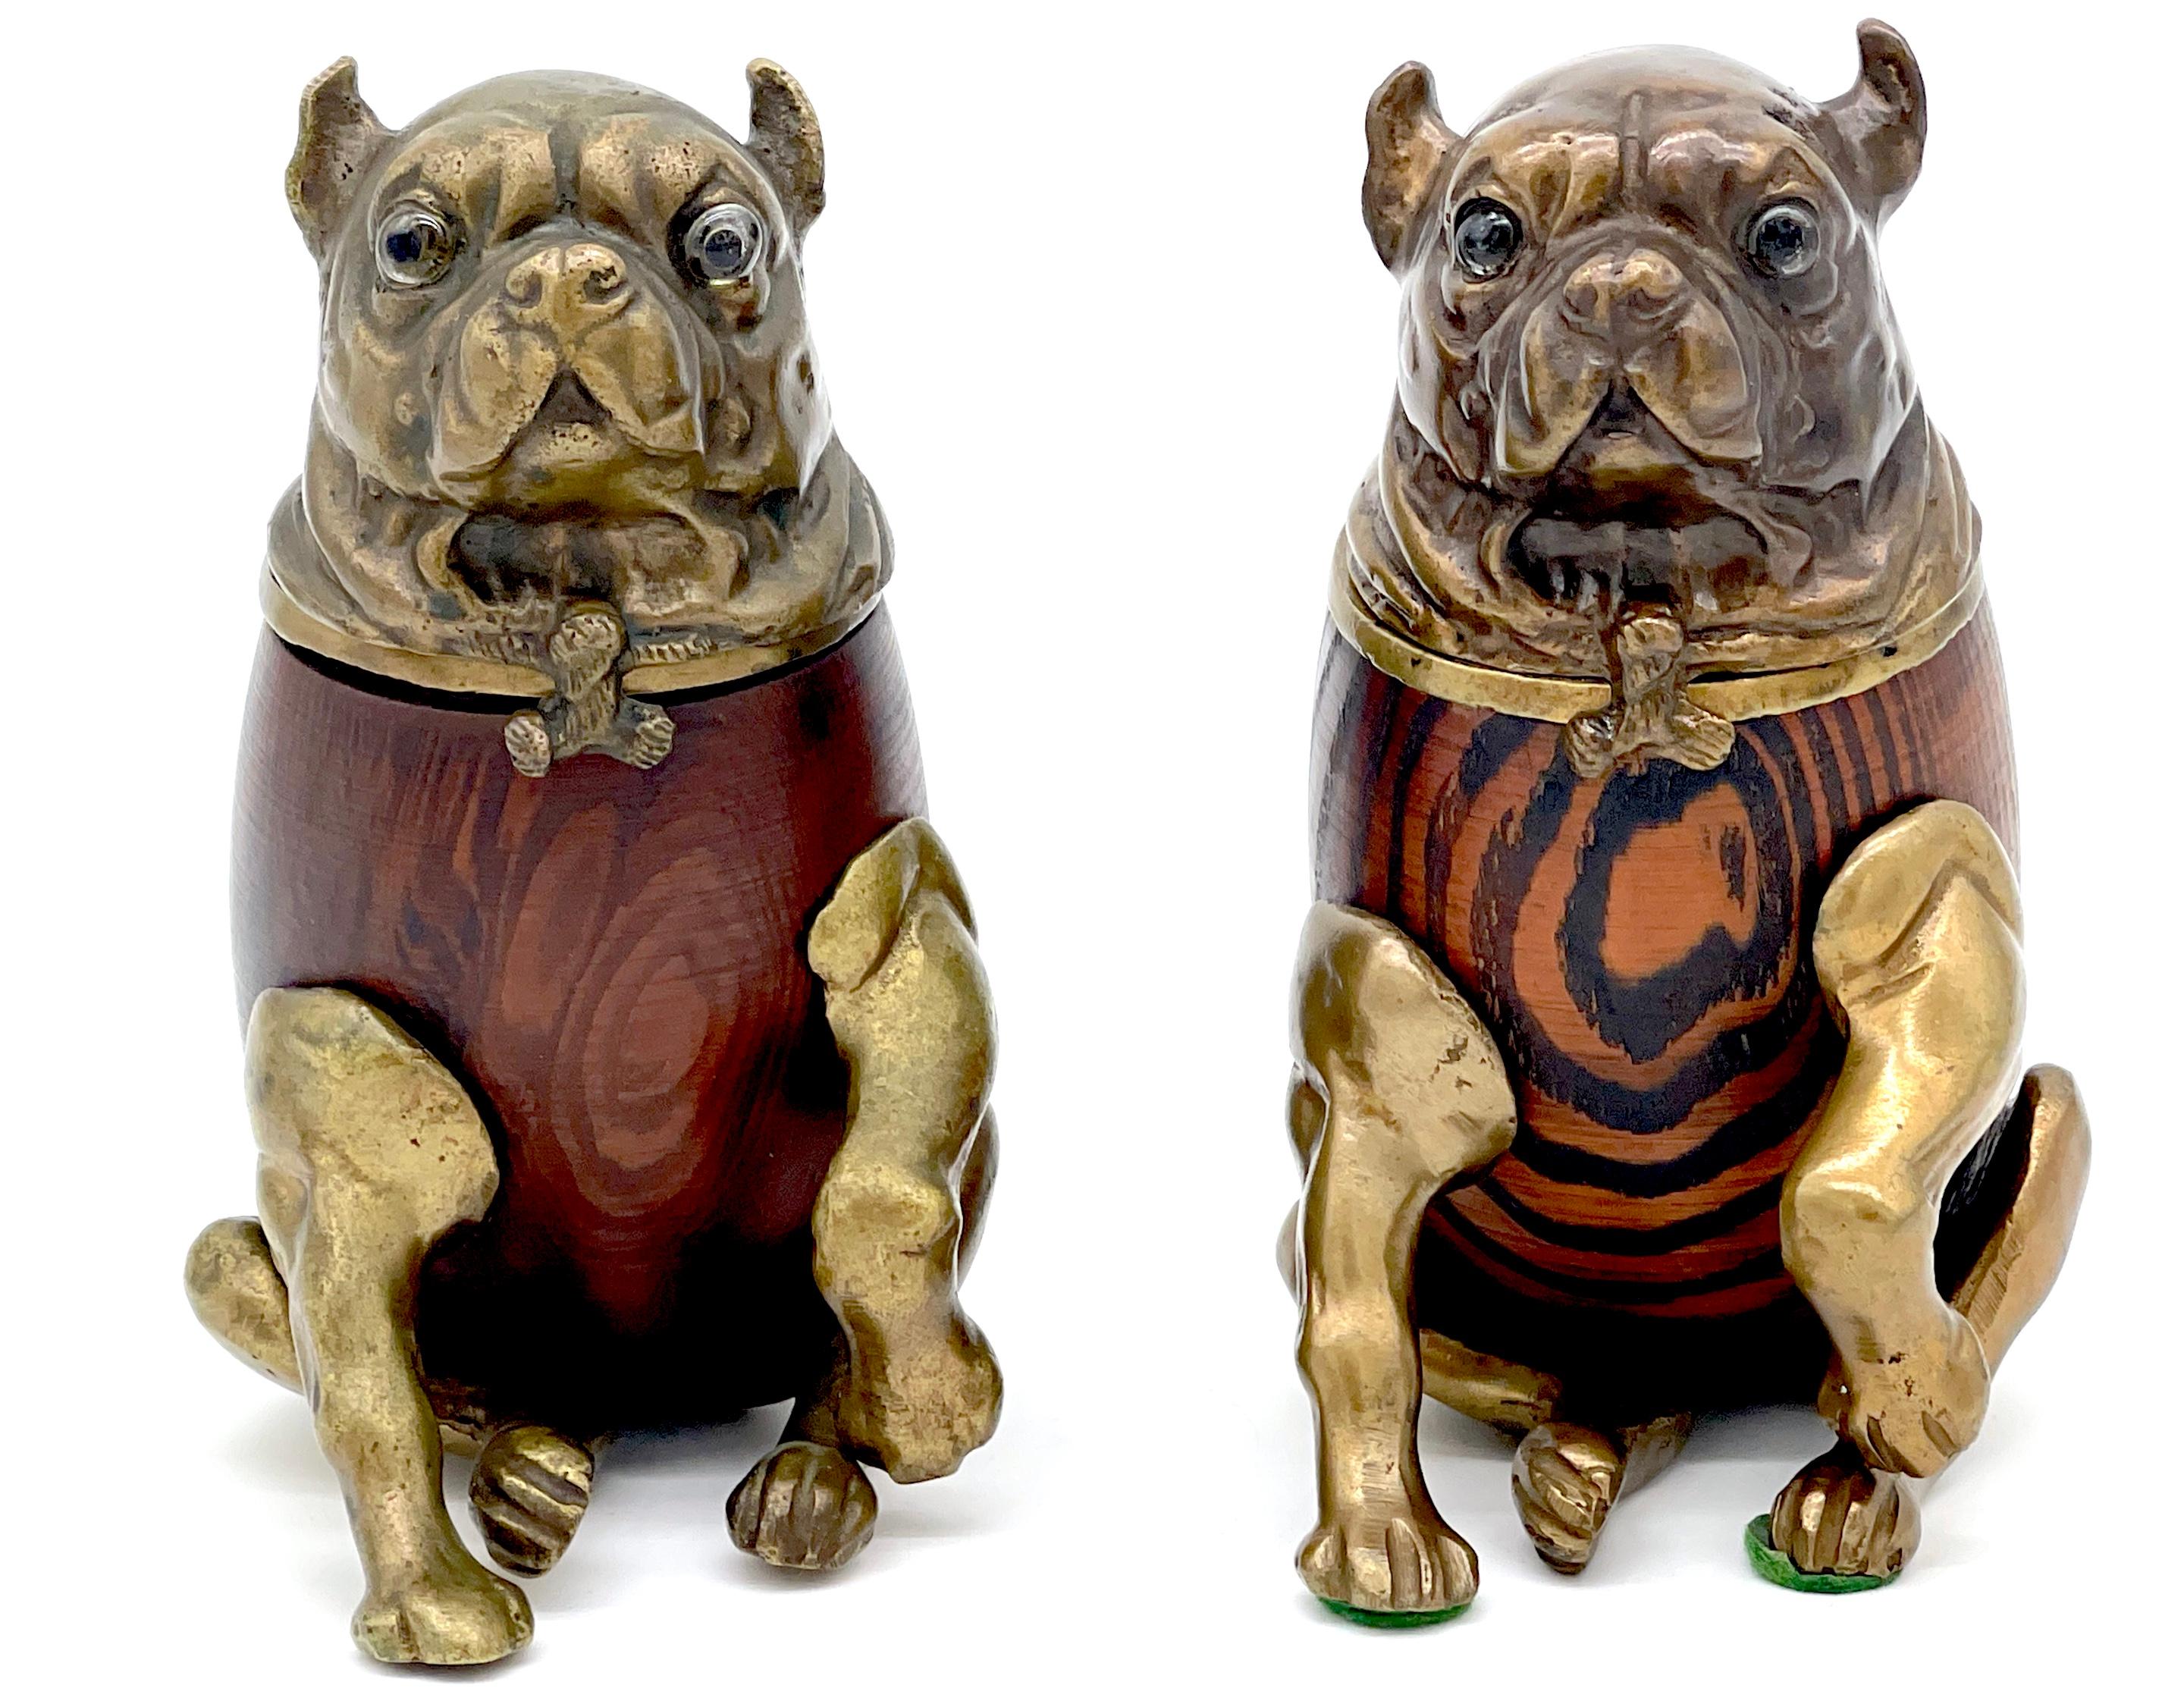 Zwei Hundekästen aus Messing und Holz im viktorianischen Stil, von Arthur Court, 1979 

*Einzelverkauf, bitte geben Sie den 'Braunen' Mops auf der linken Seite oder den 'Gestromten' Mops auf der rechten Seite an oder kaufen Sie beide

Gönnen Sie